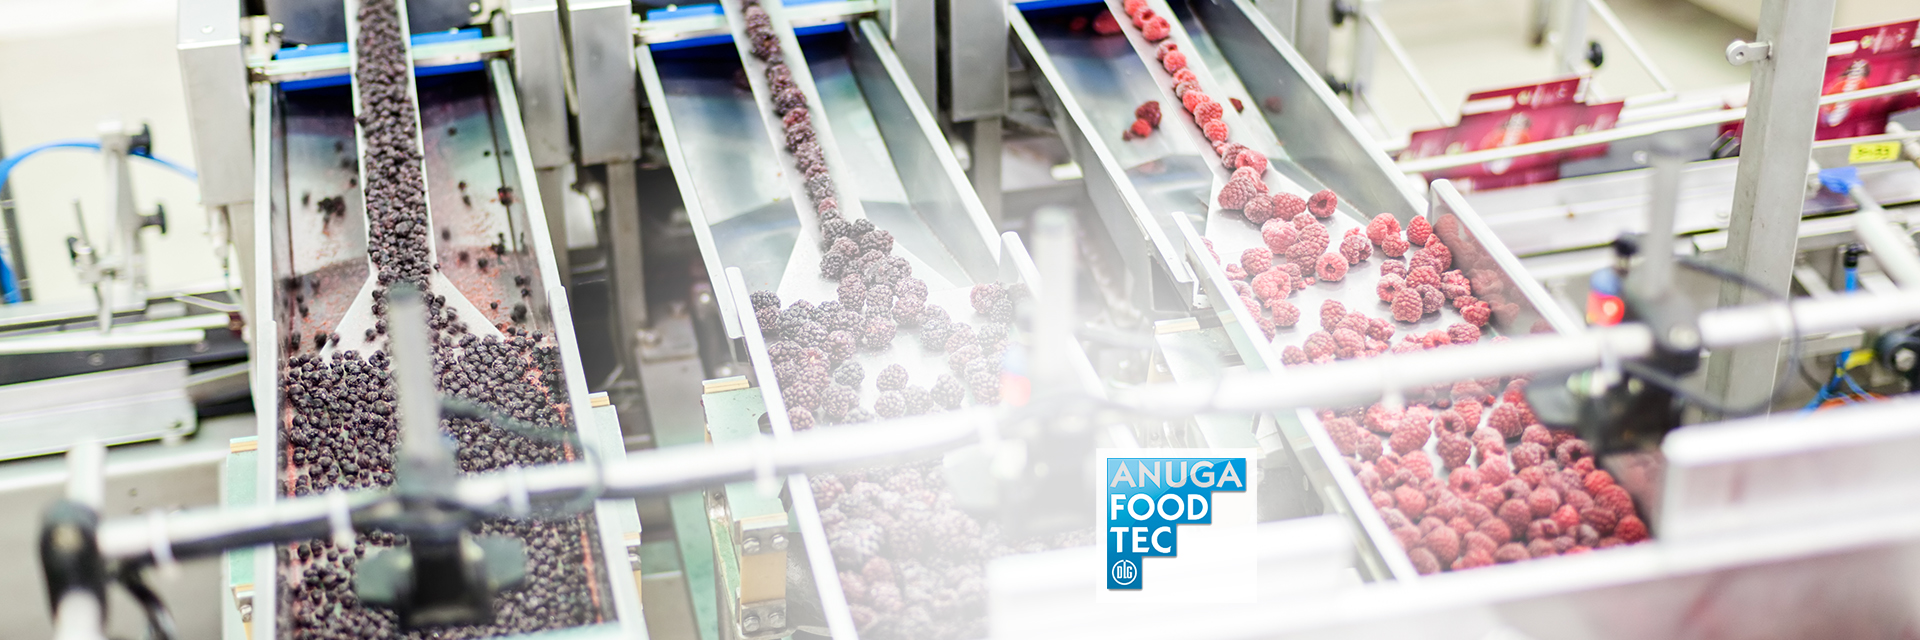 Verarbeitung von gefrorenen Beeren in einer Lebensmittelfabrik mit dem Logo der Anuga Food Tec